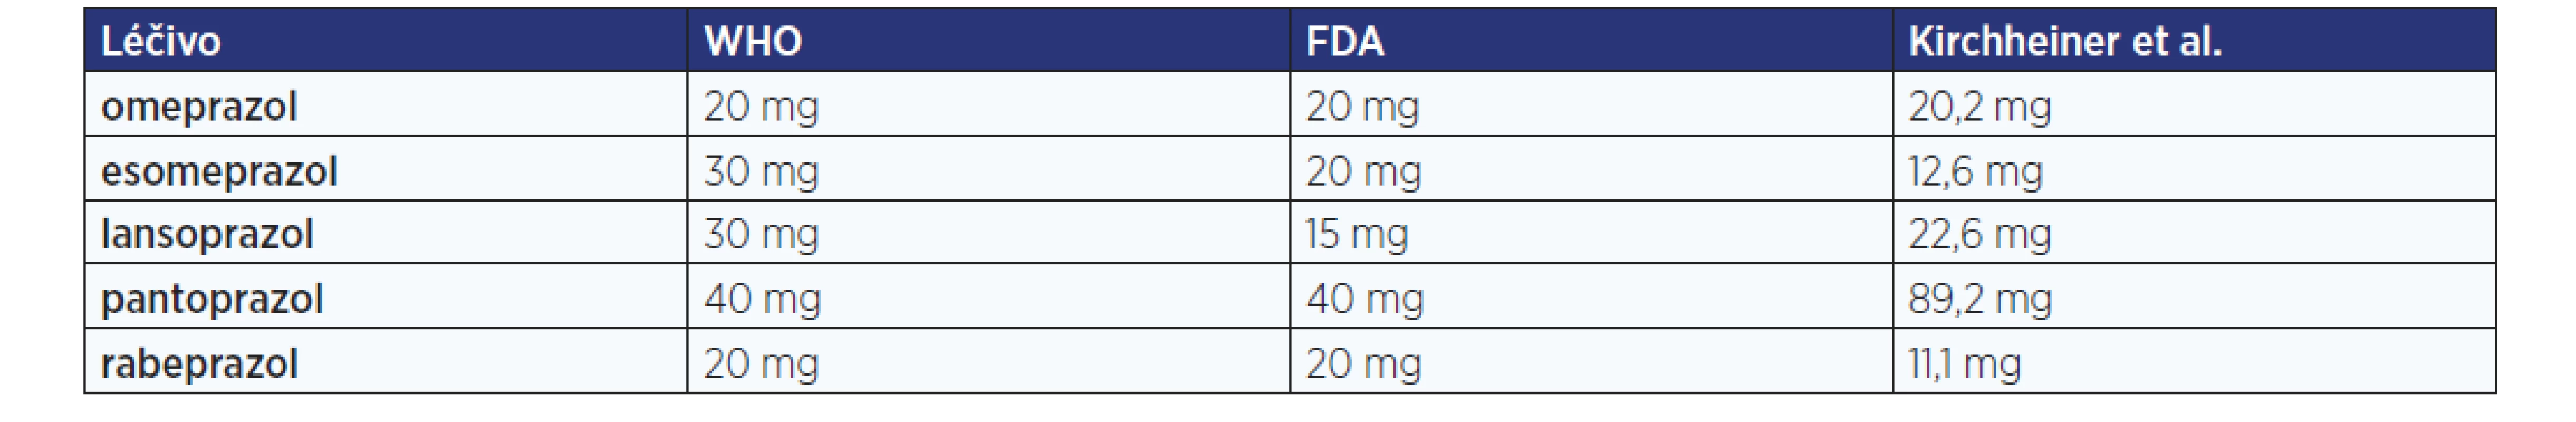 Ekvipotentní dávky jednotlivých PPI podle doporučení WHO a FDA pro léčbu GERD a farmakokinetického modelu odrážejícího
dosažení 24hodinového pH > 4 u zdravých dobrovolníků (upraveno podle: 4)